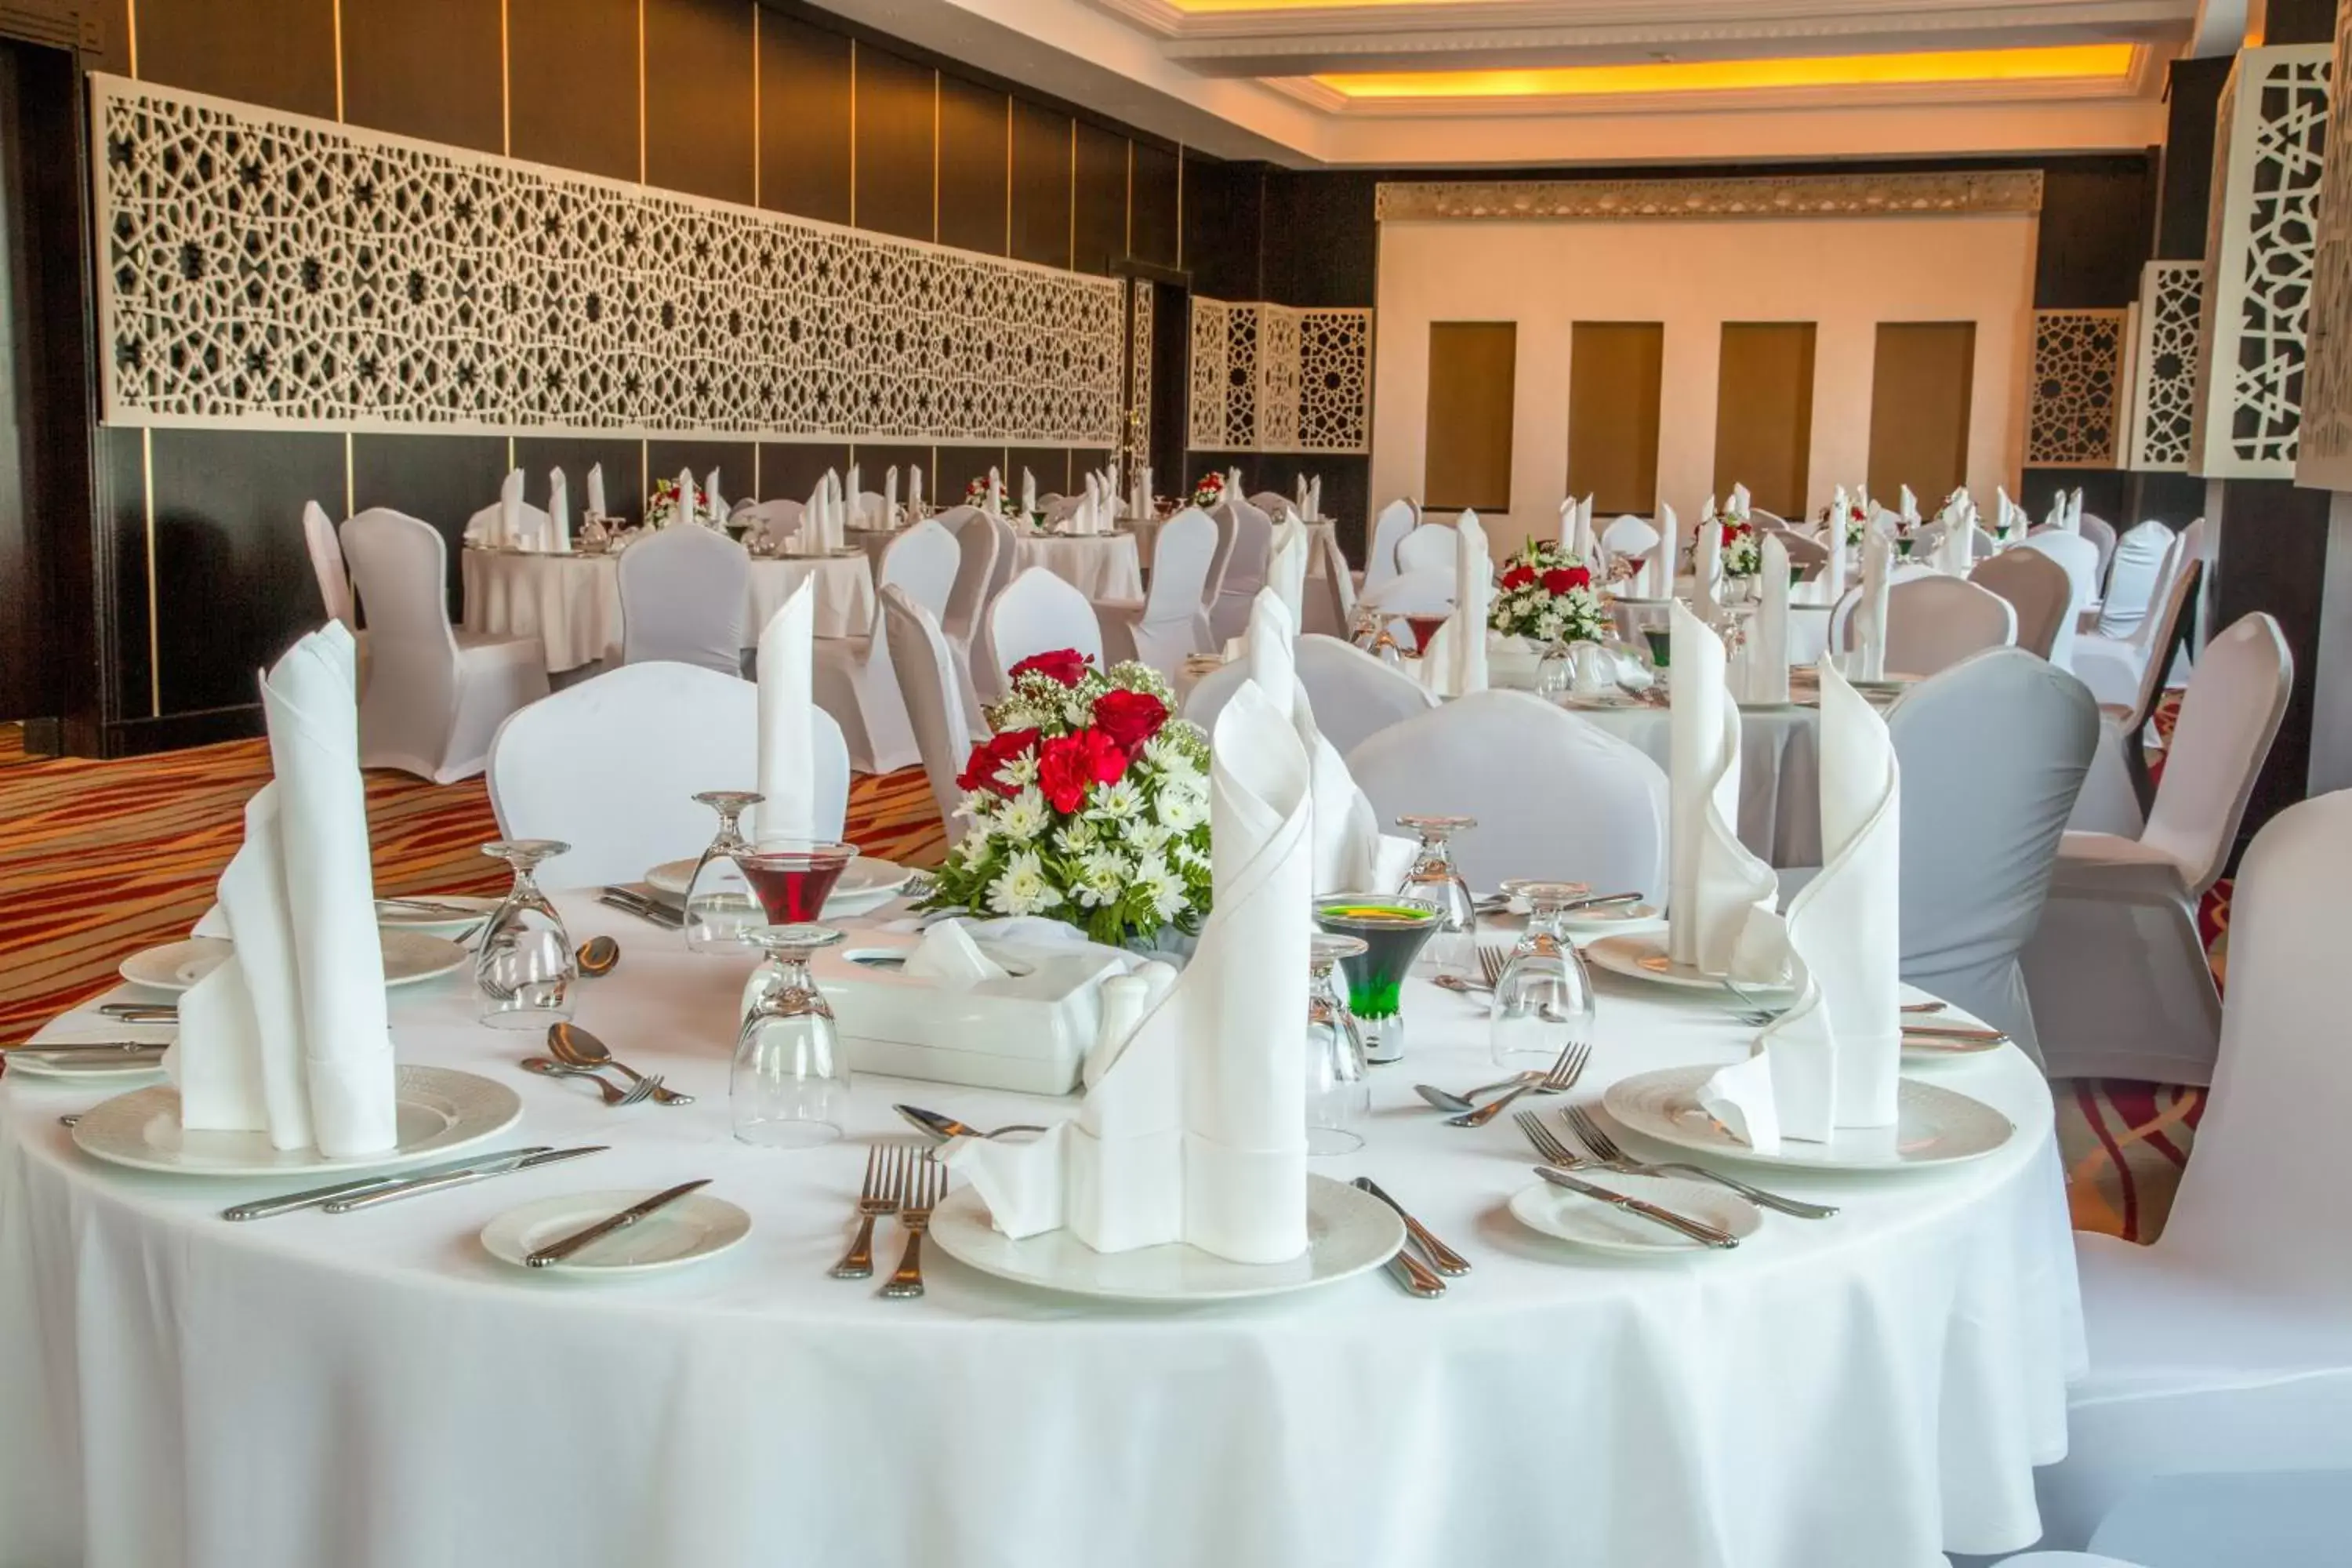 Banquet/Function facilities, Banquet Facilities in Retaj Al Rayyan